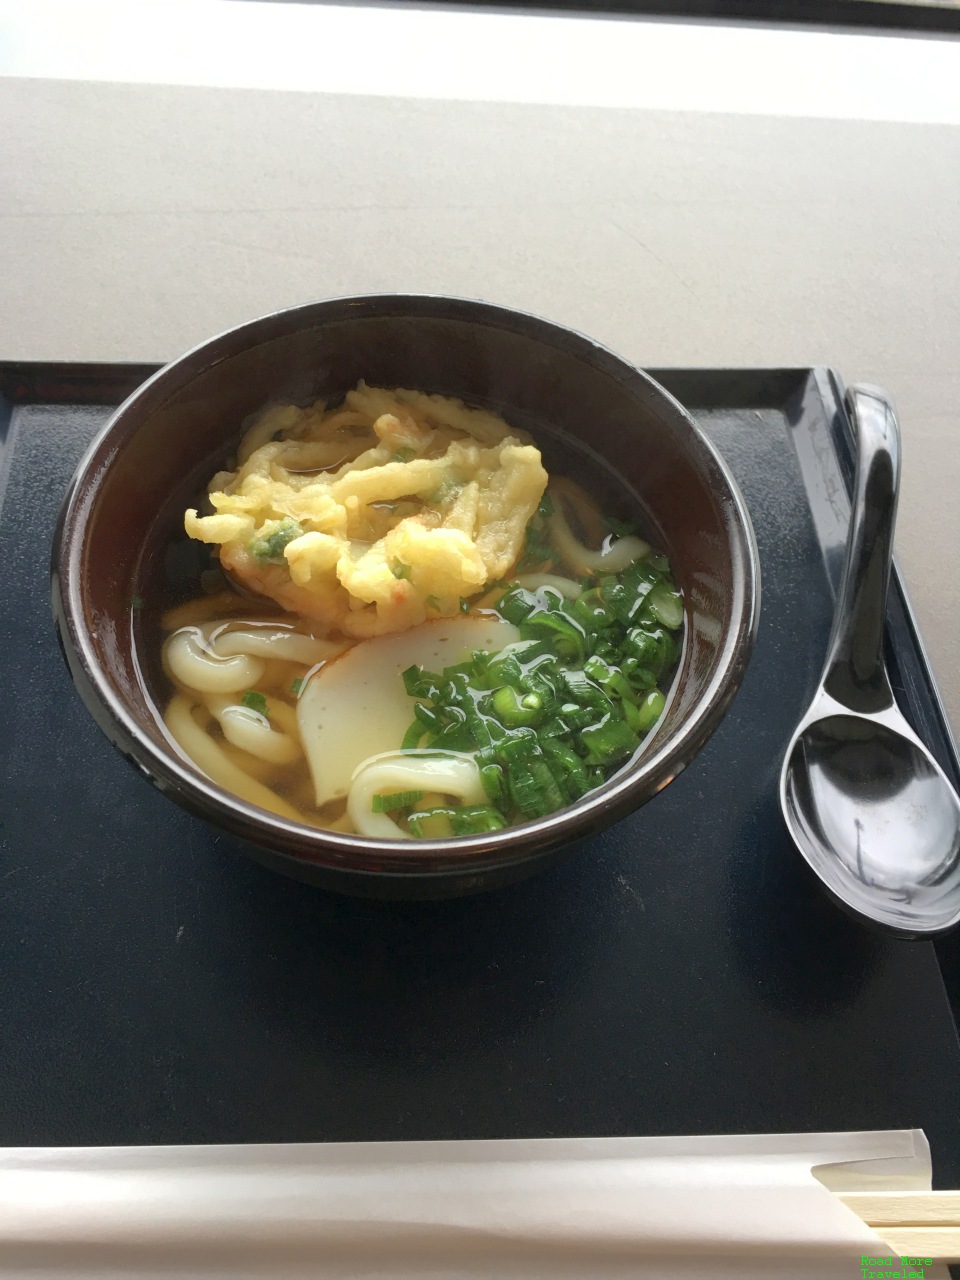 Vegetable udon noodles